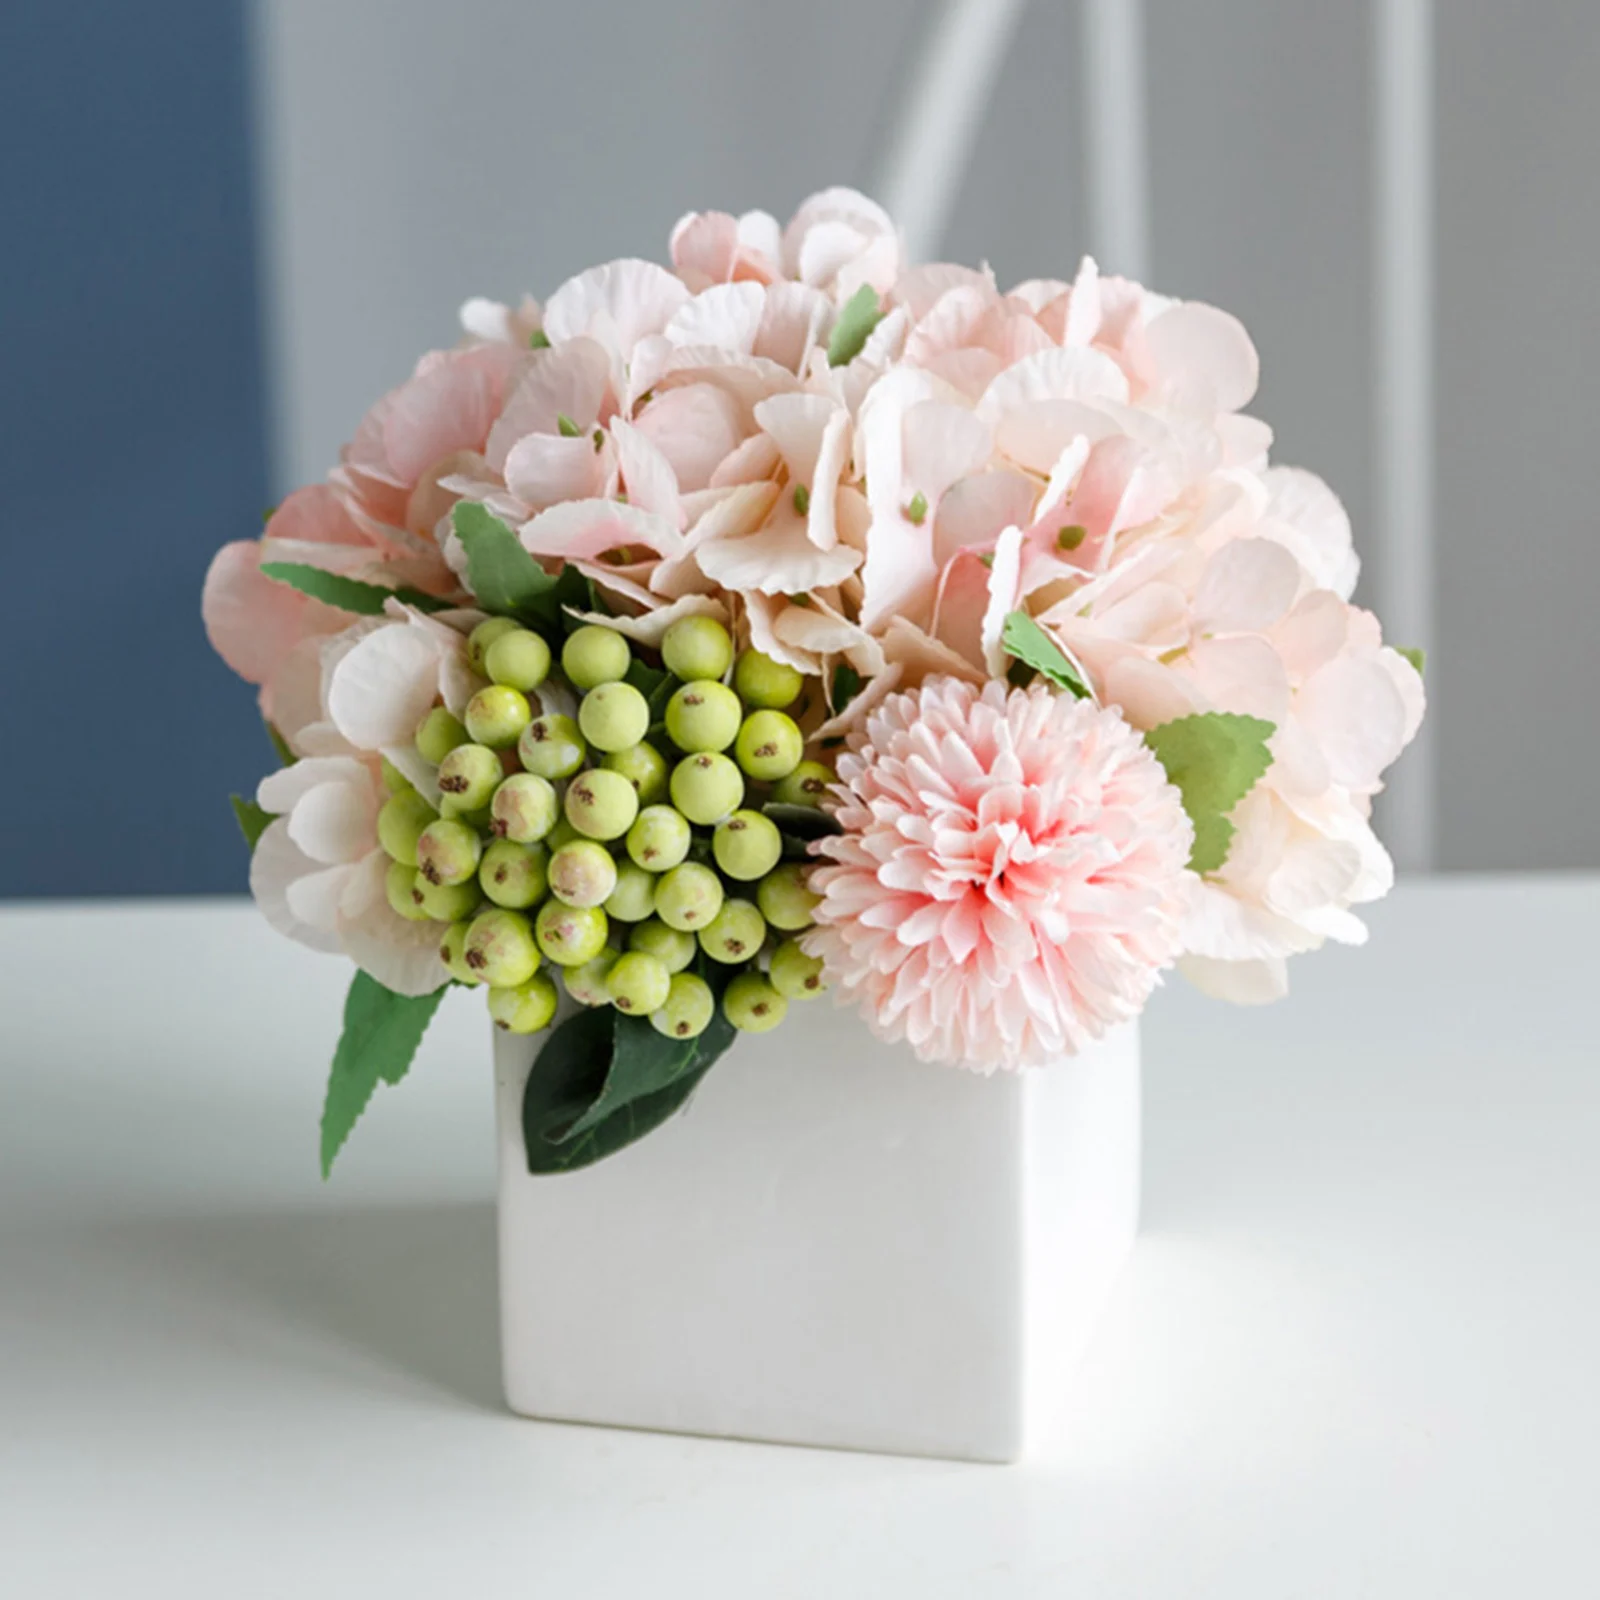 Artificial Flowers Vase Hydrangea Silk Floral Arrangements Home Office Decor